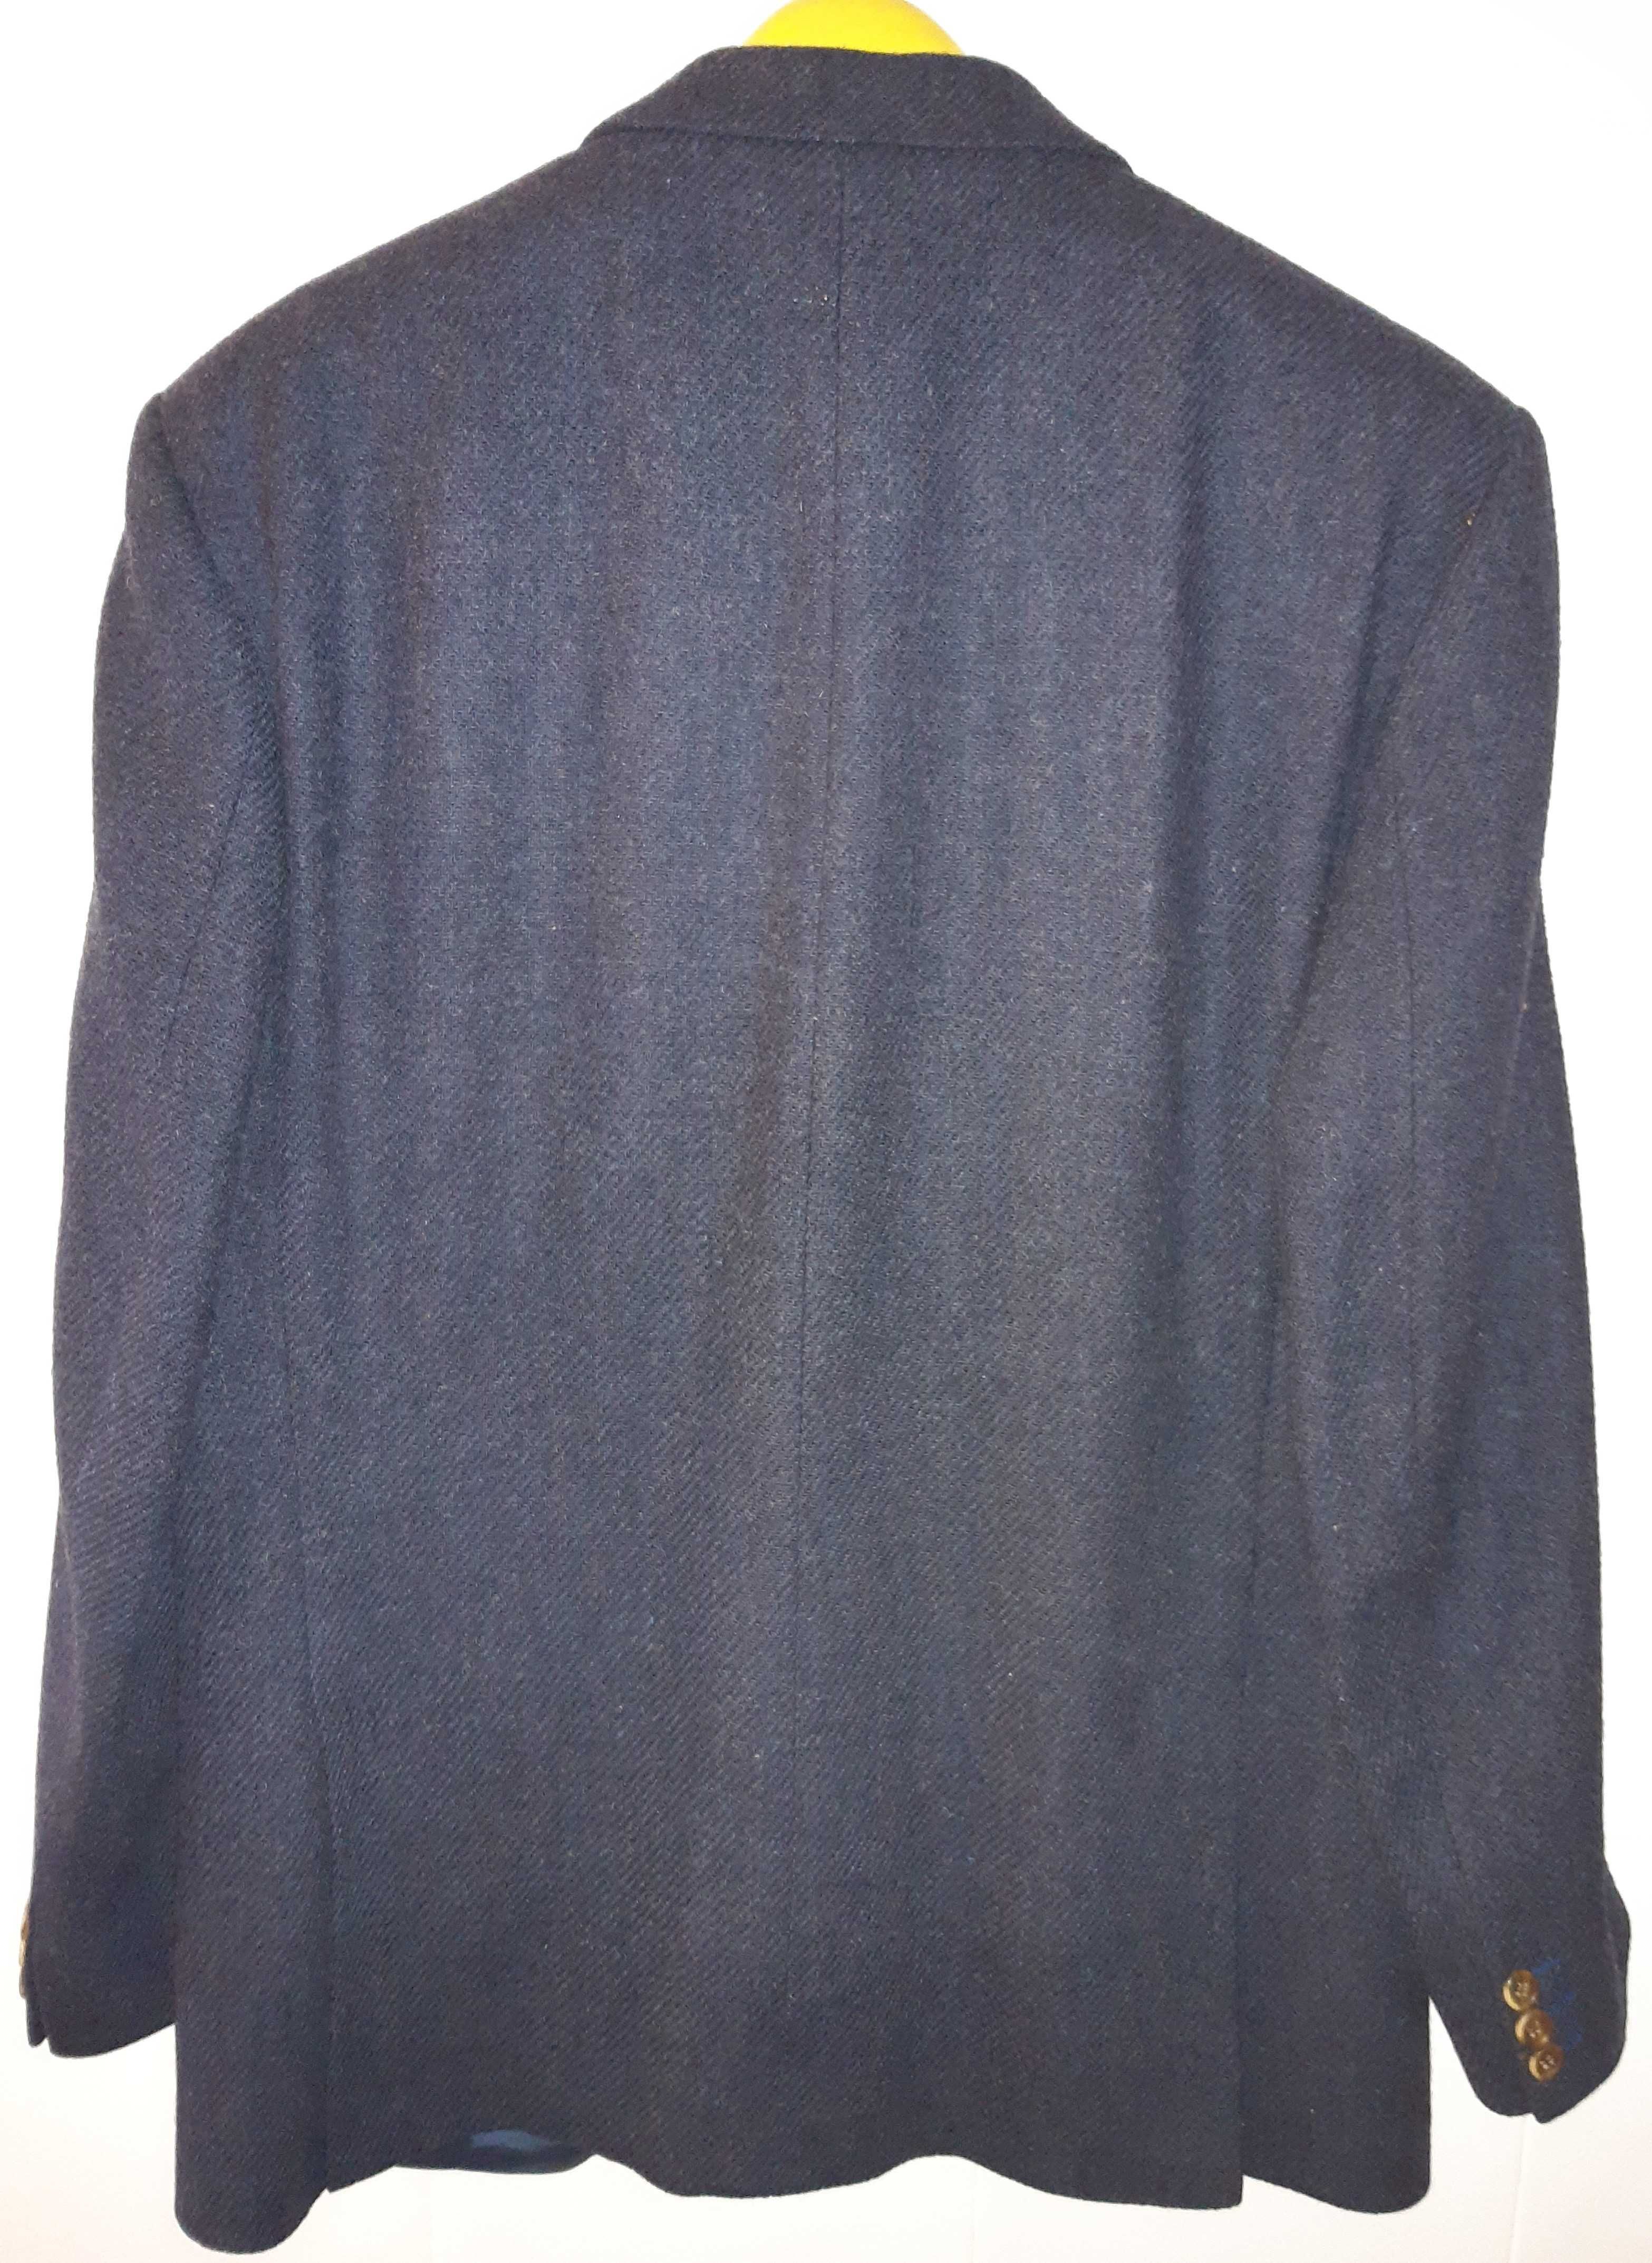 Blazer azul espinhado em pura lã virgem